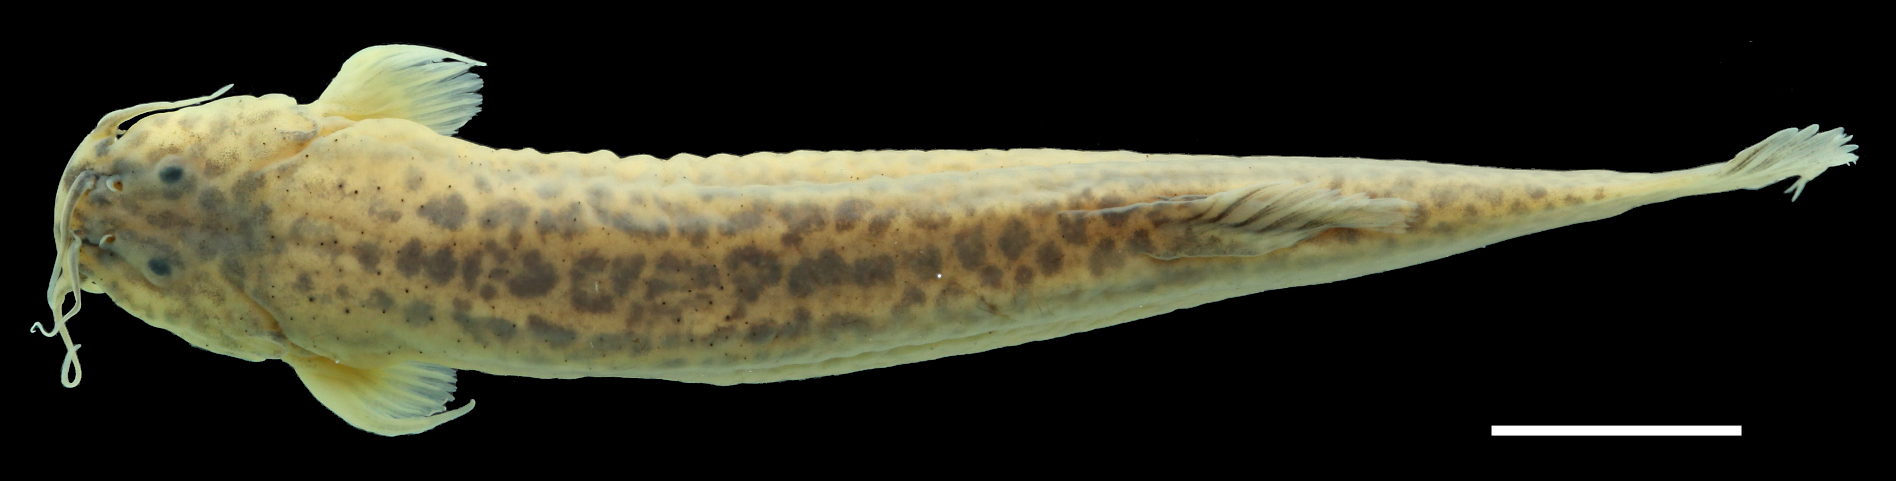 Paratype of <em>Trichomycterus ruitoquensis</em>, IAvH-P-4342_Dorsal, 63.8 mm SL (scale bar = 1 cm). Photograph by C. DoNascimiento